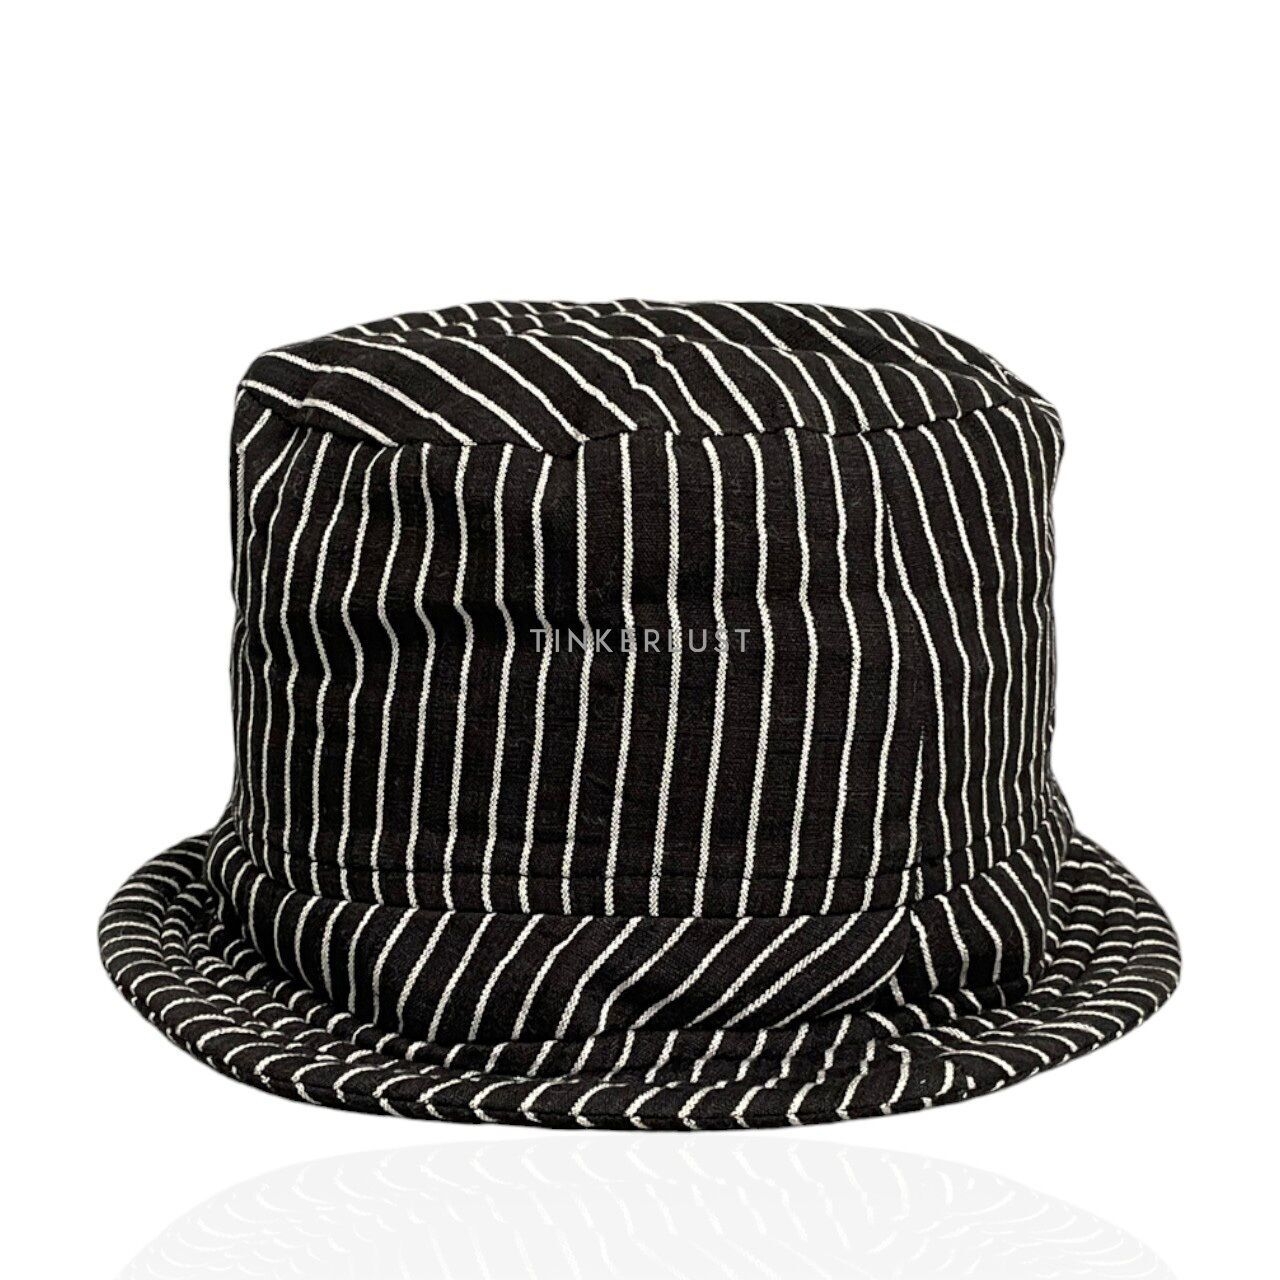 Okainku Black Striped Hats